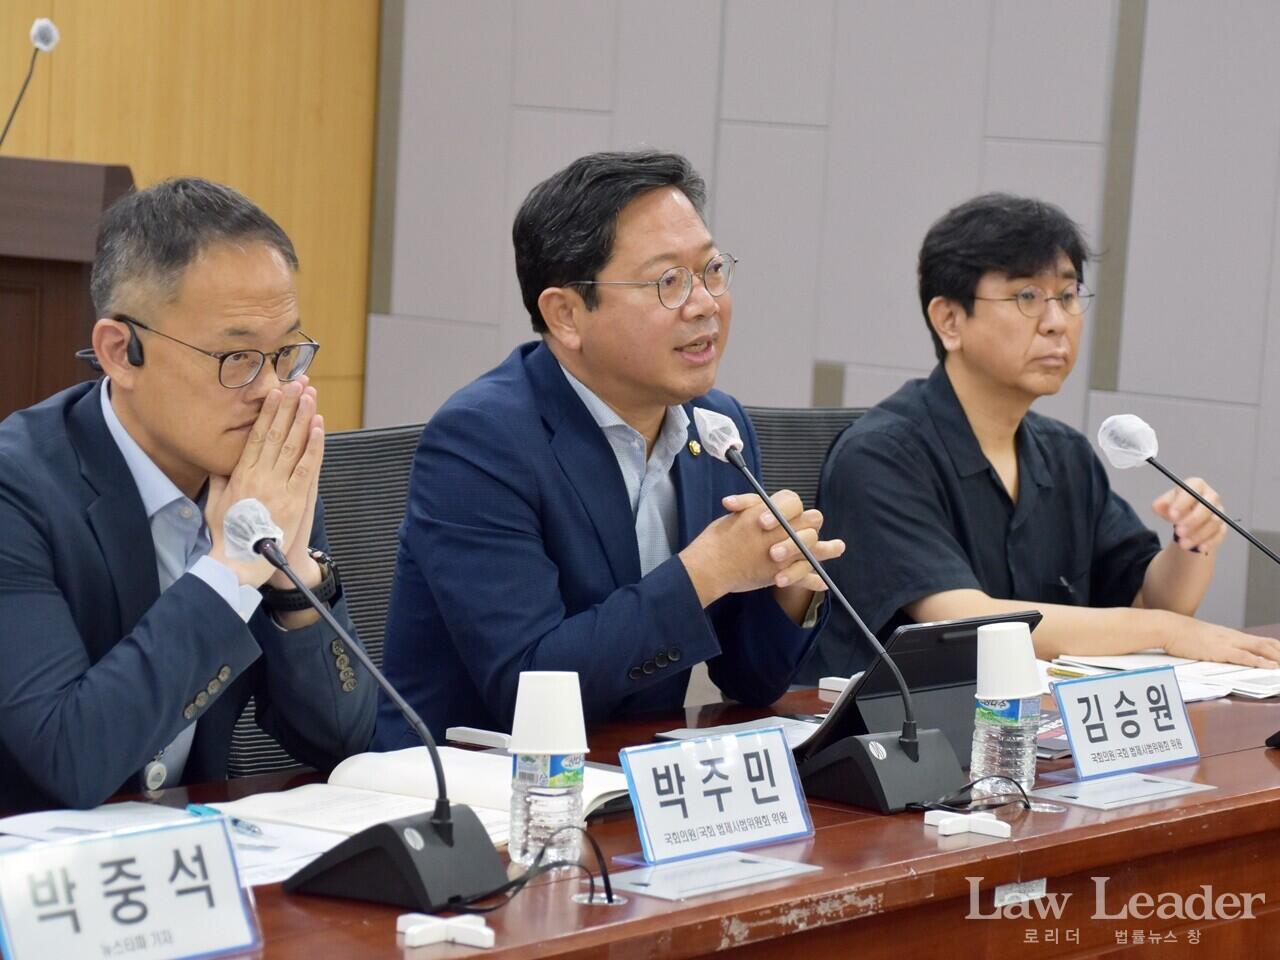 왼쪽부터 박주민 국회의원, 김승원 국회의원, 투명사회를 위한 정보공개센터 김유승 대표